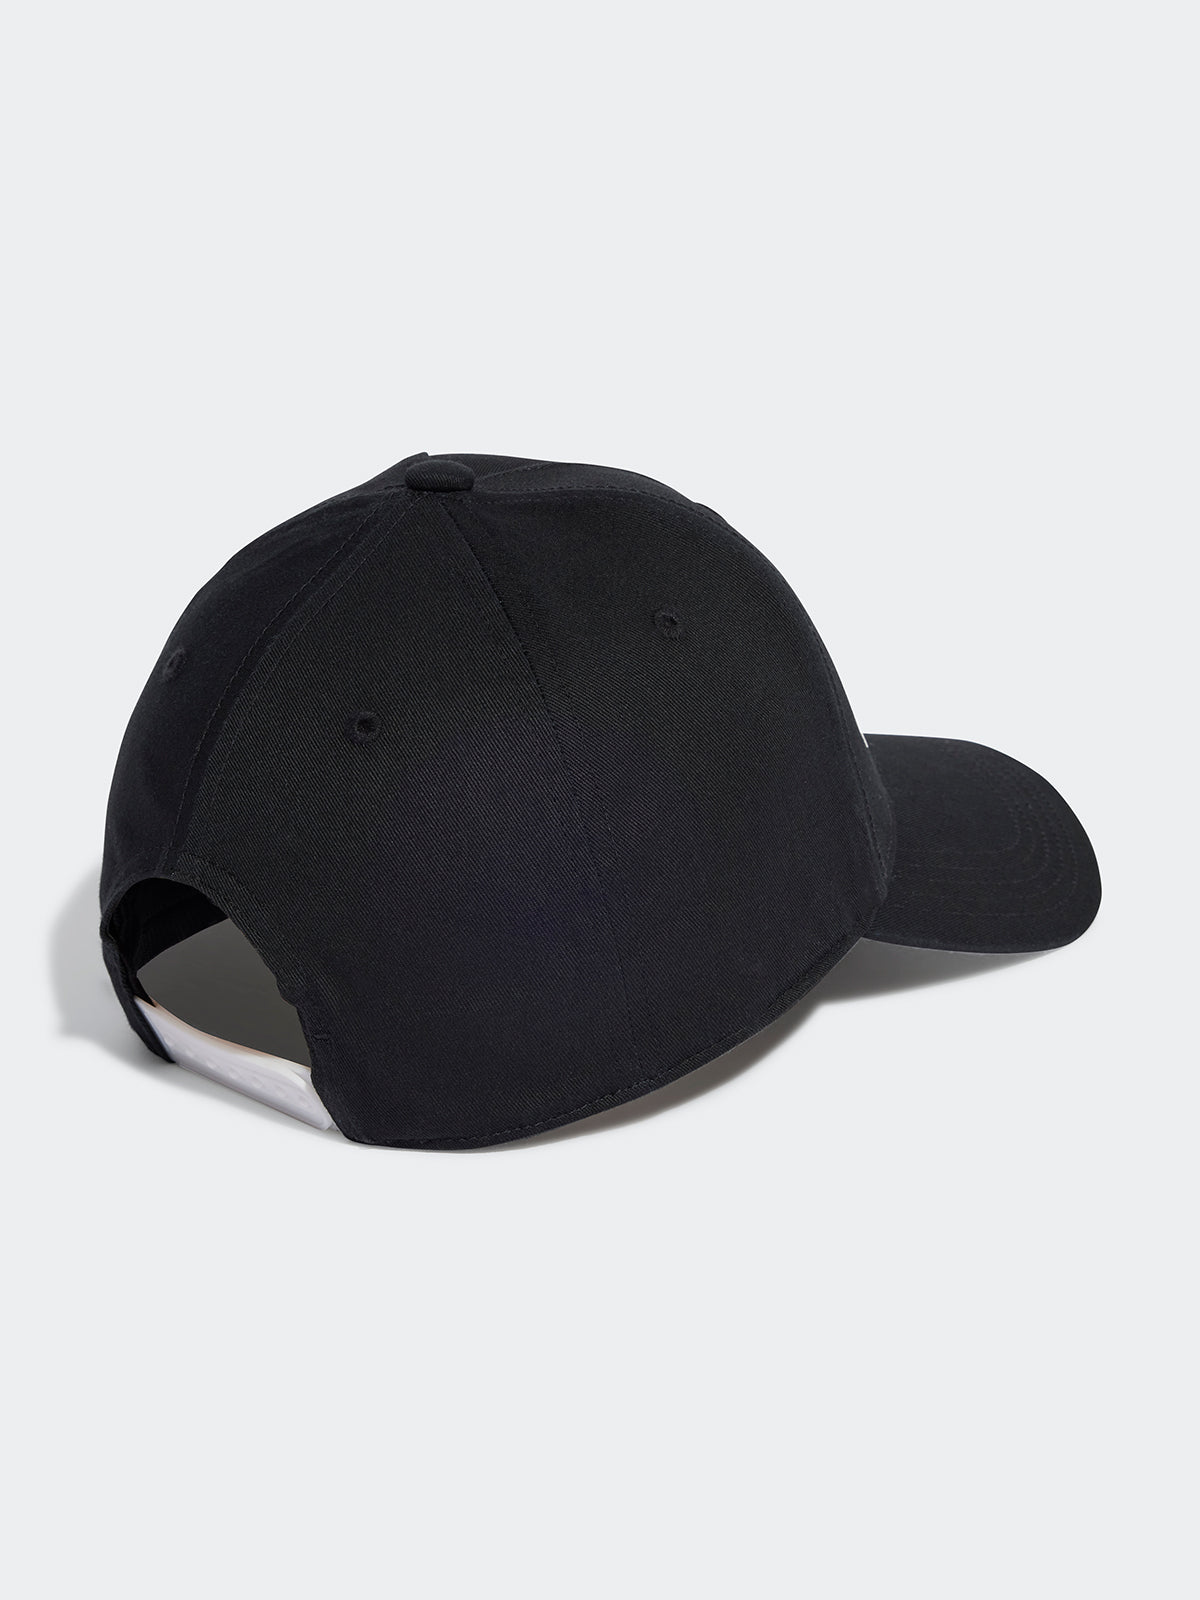 כובע עם הדפס לוגו / יוניסקס- adidas performance|אדידס פרפורמנס